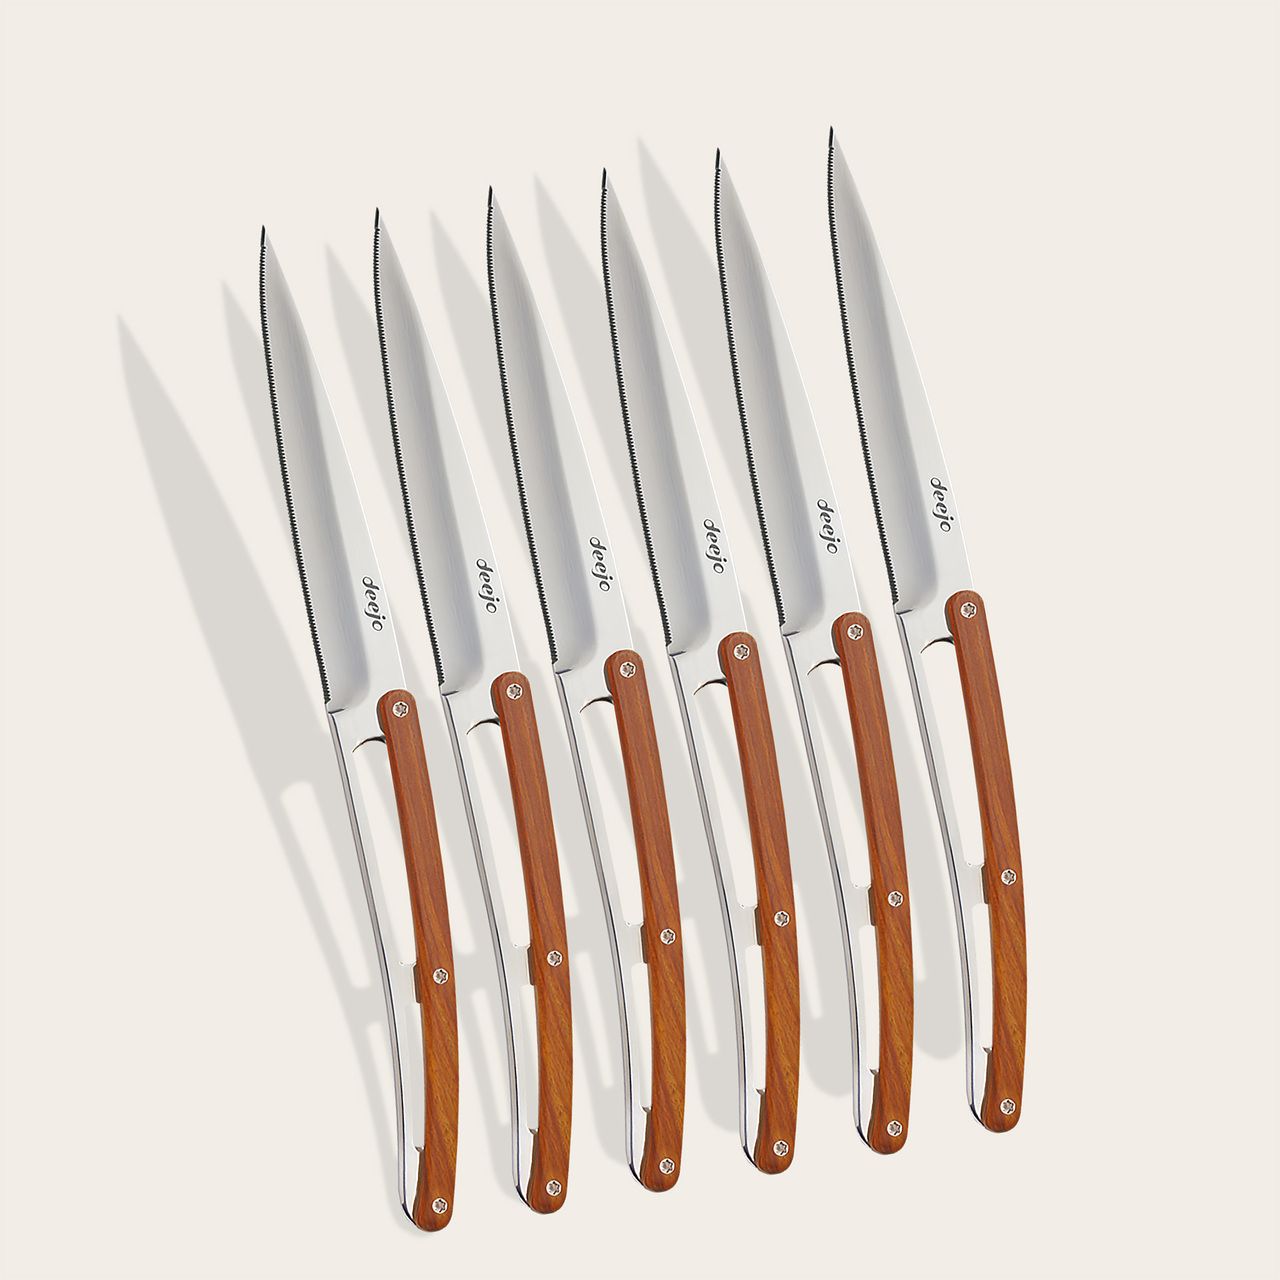 https://www.deejo.com/medias/produits/2367732633/22474_1280-6-deejo-steak-knives-serrated-olive-wood.jpg